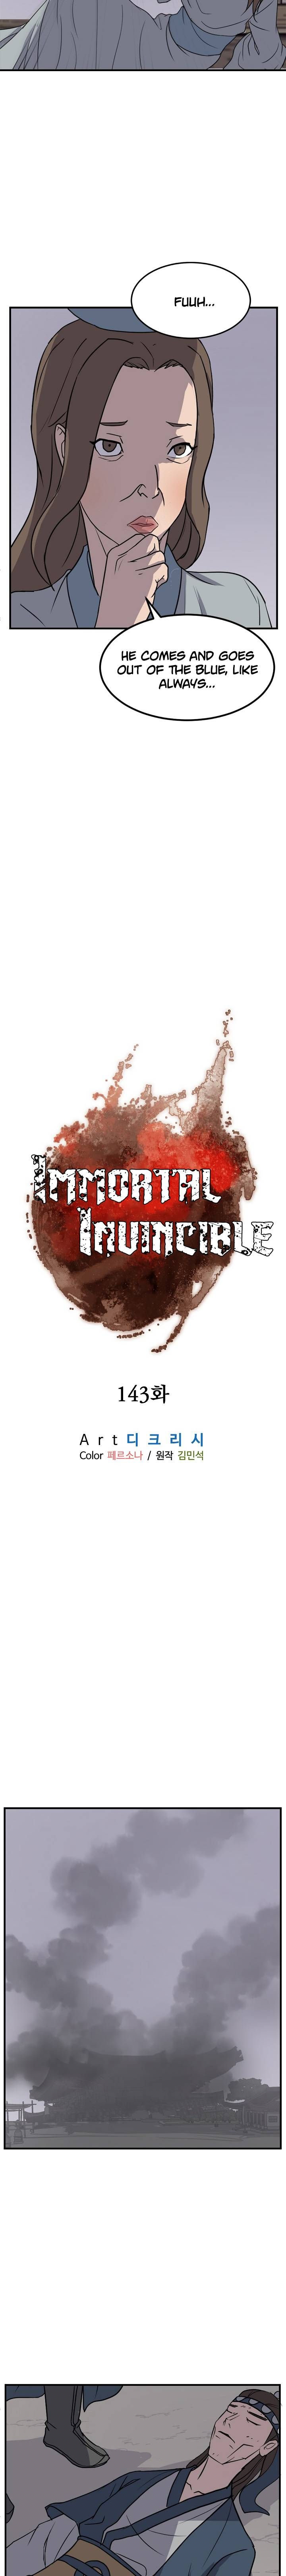 Immortal Invincible 143 7